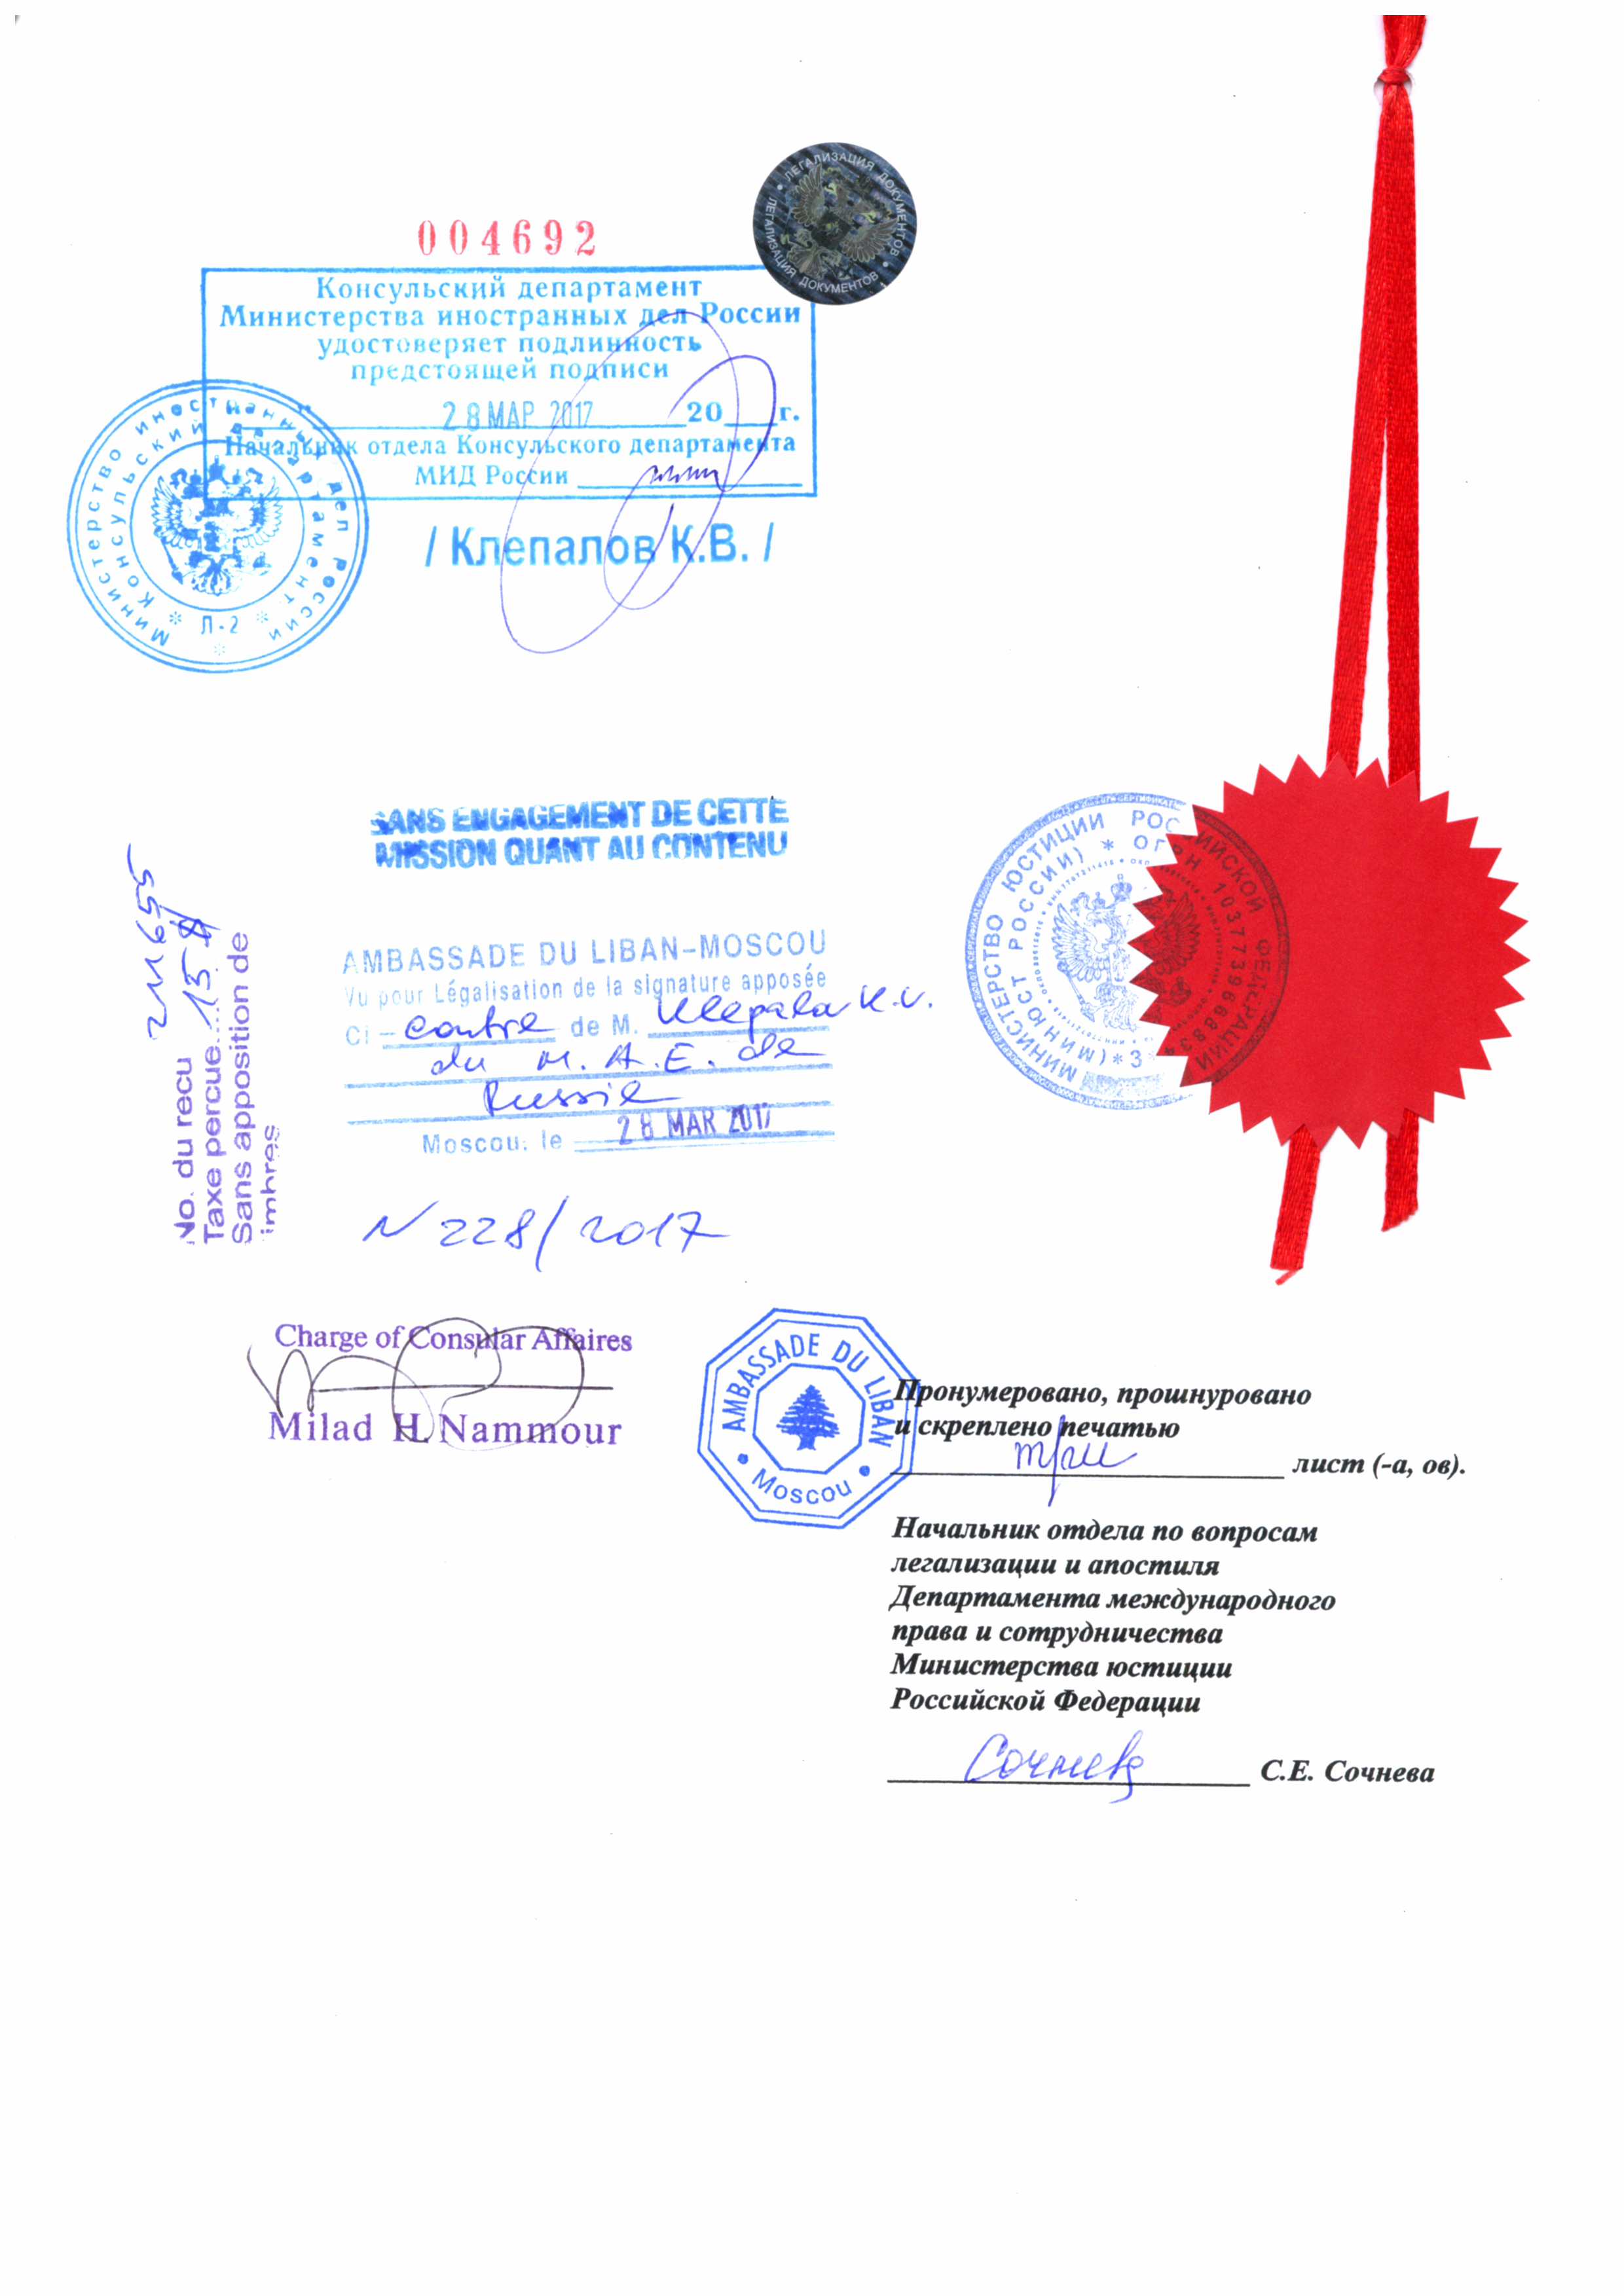 Образец консульской легализации российского документа для Ливана